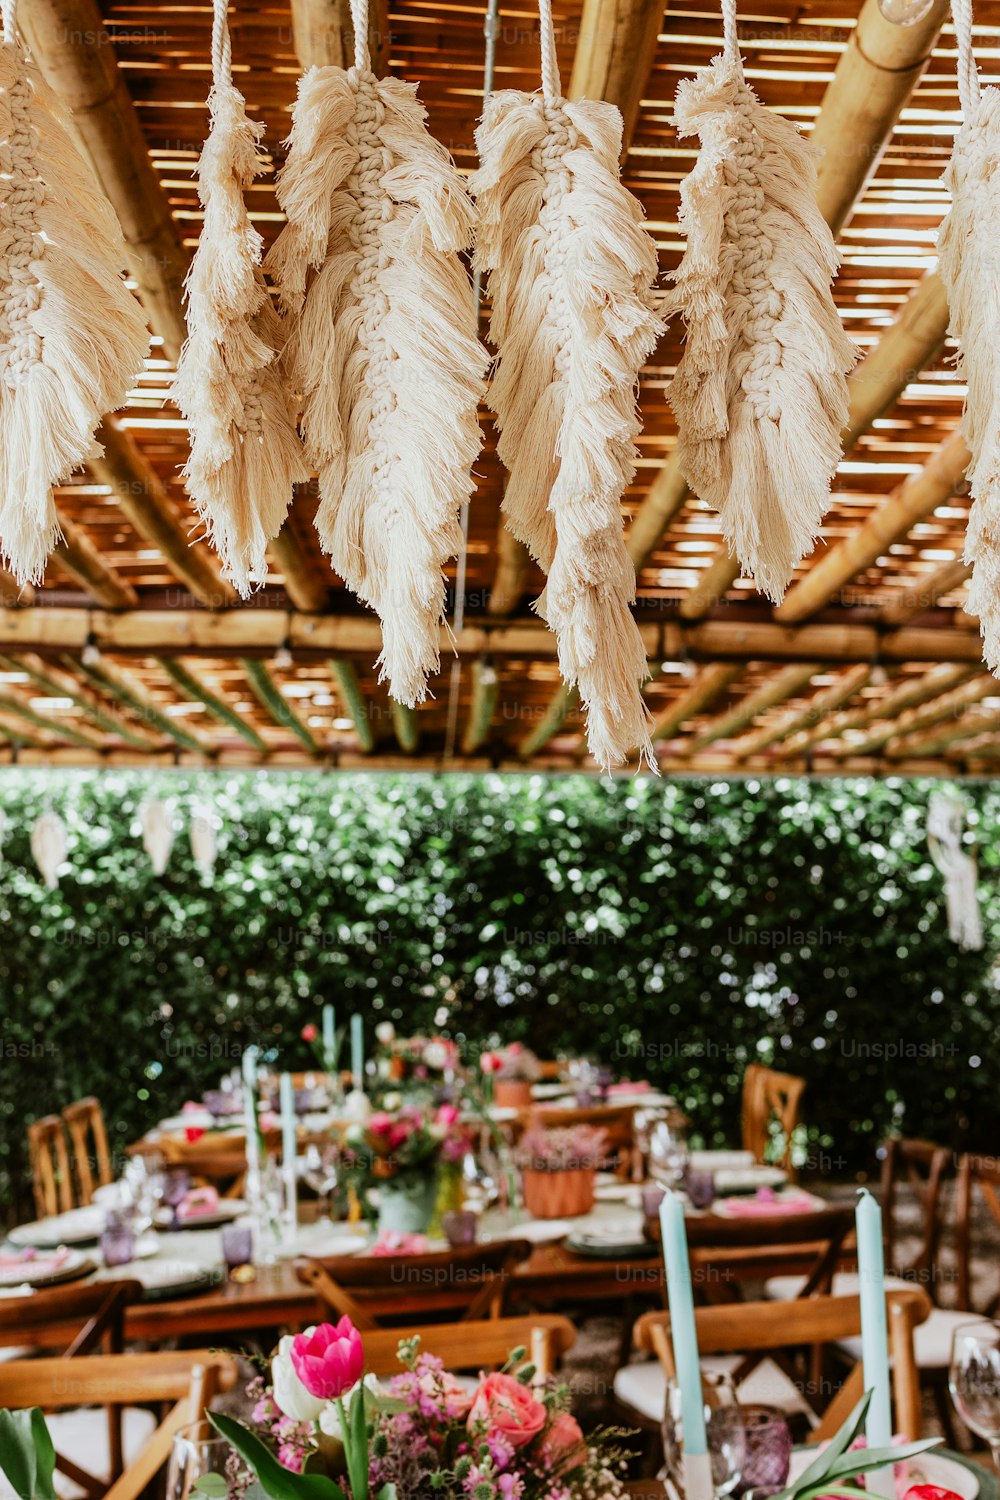 terrasse avec des tables dressées avec des fleurs et des assiettes sur table décorées pour la réception de mariage en Amérique latine